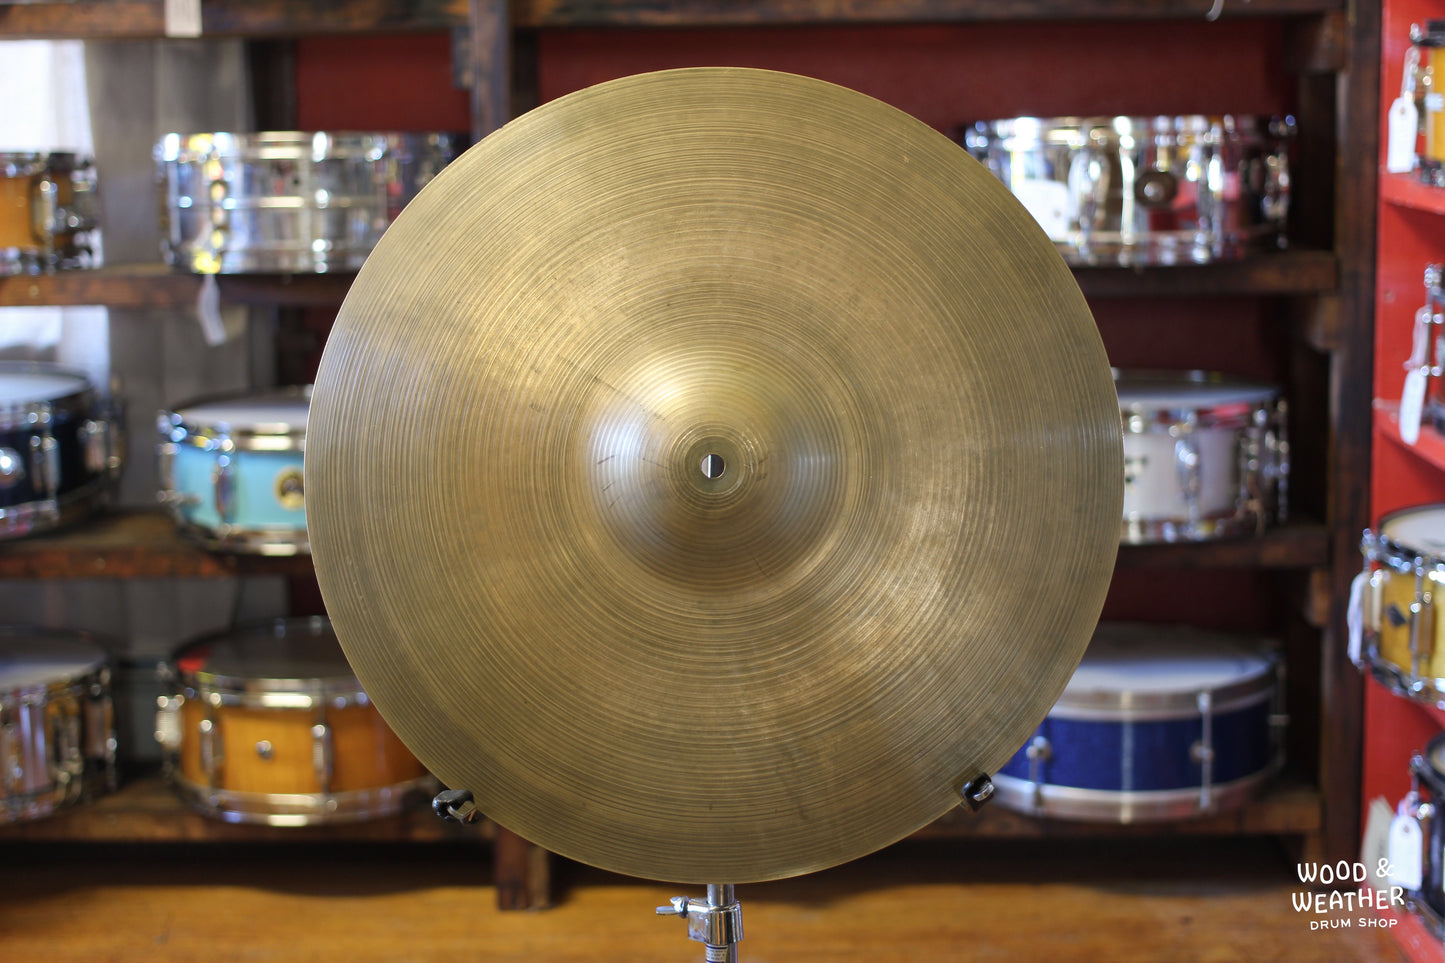 1960s A. Zildjian 18" Thin Crash Cymbal 1515g